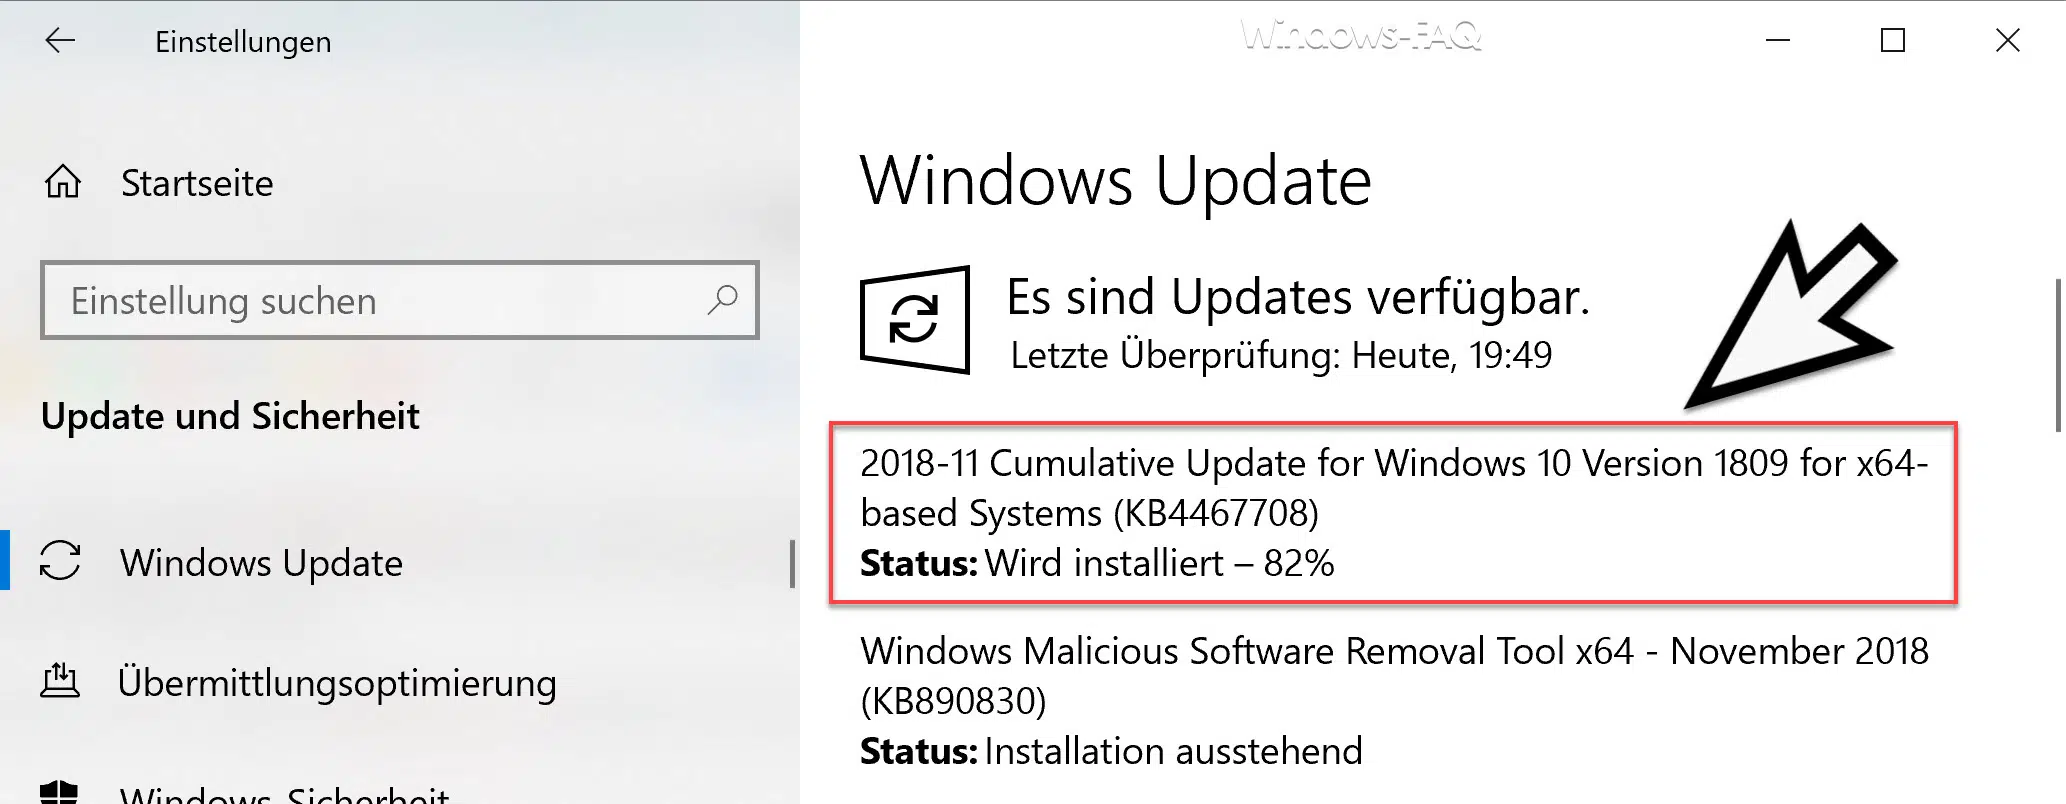 Download Update KB4467708 für Windows 10 Version 1809 Build 17763.134